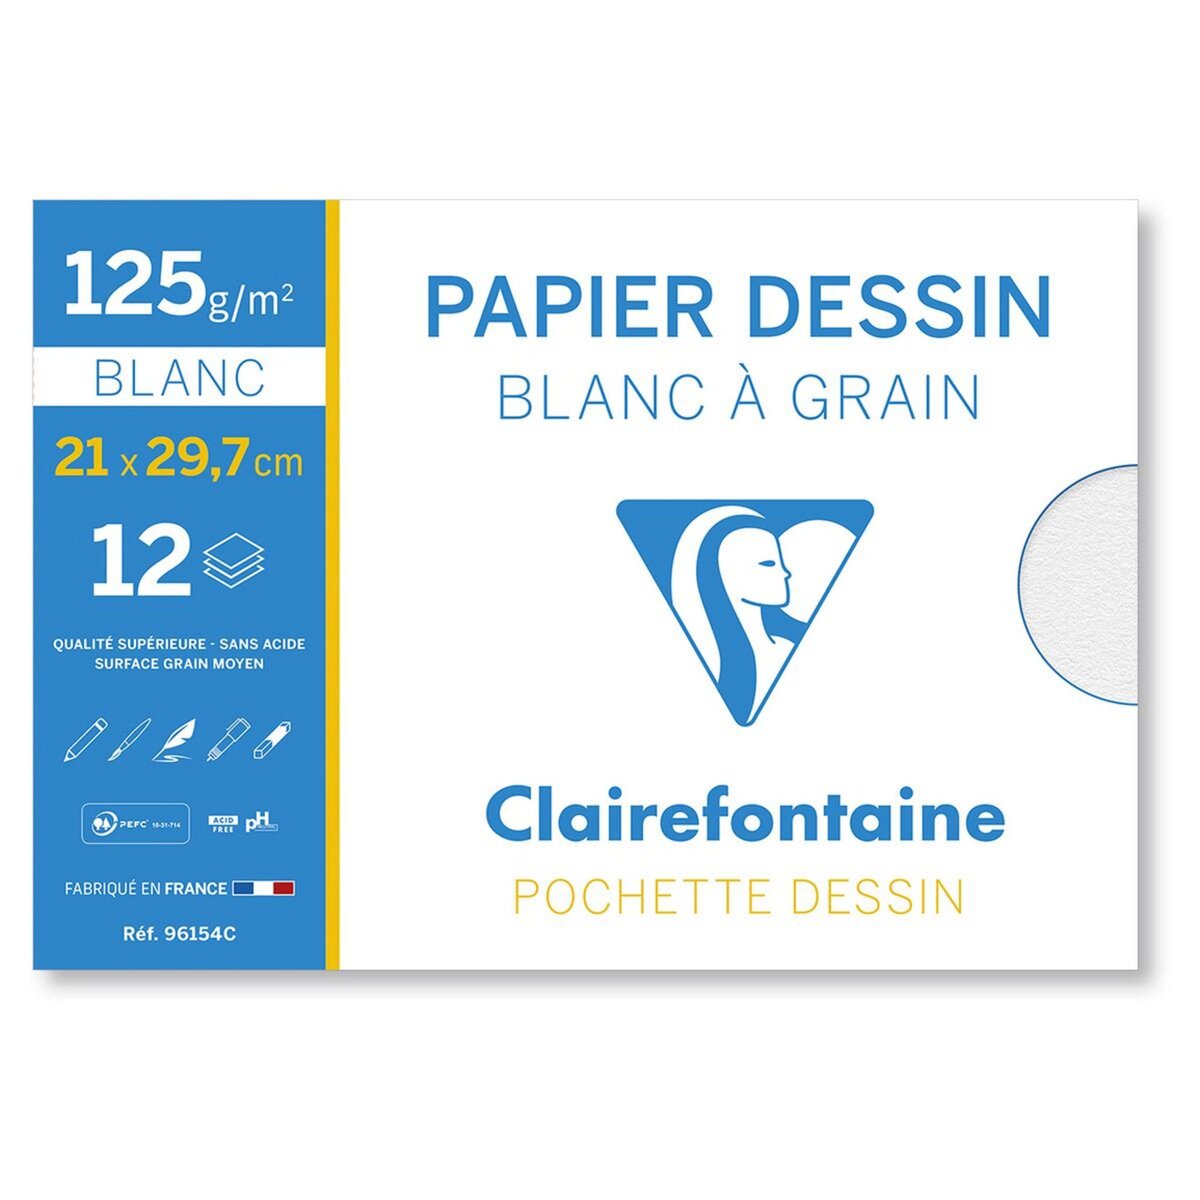 CLAIREFONTAINE Pochette papier à dessin 12 feuilles A4 125g/m2 blanc